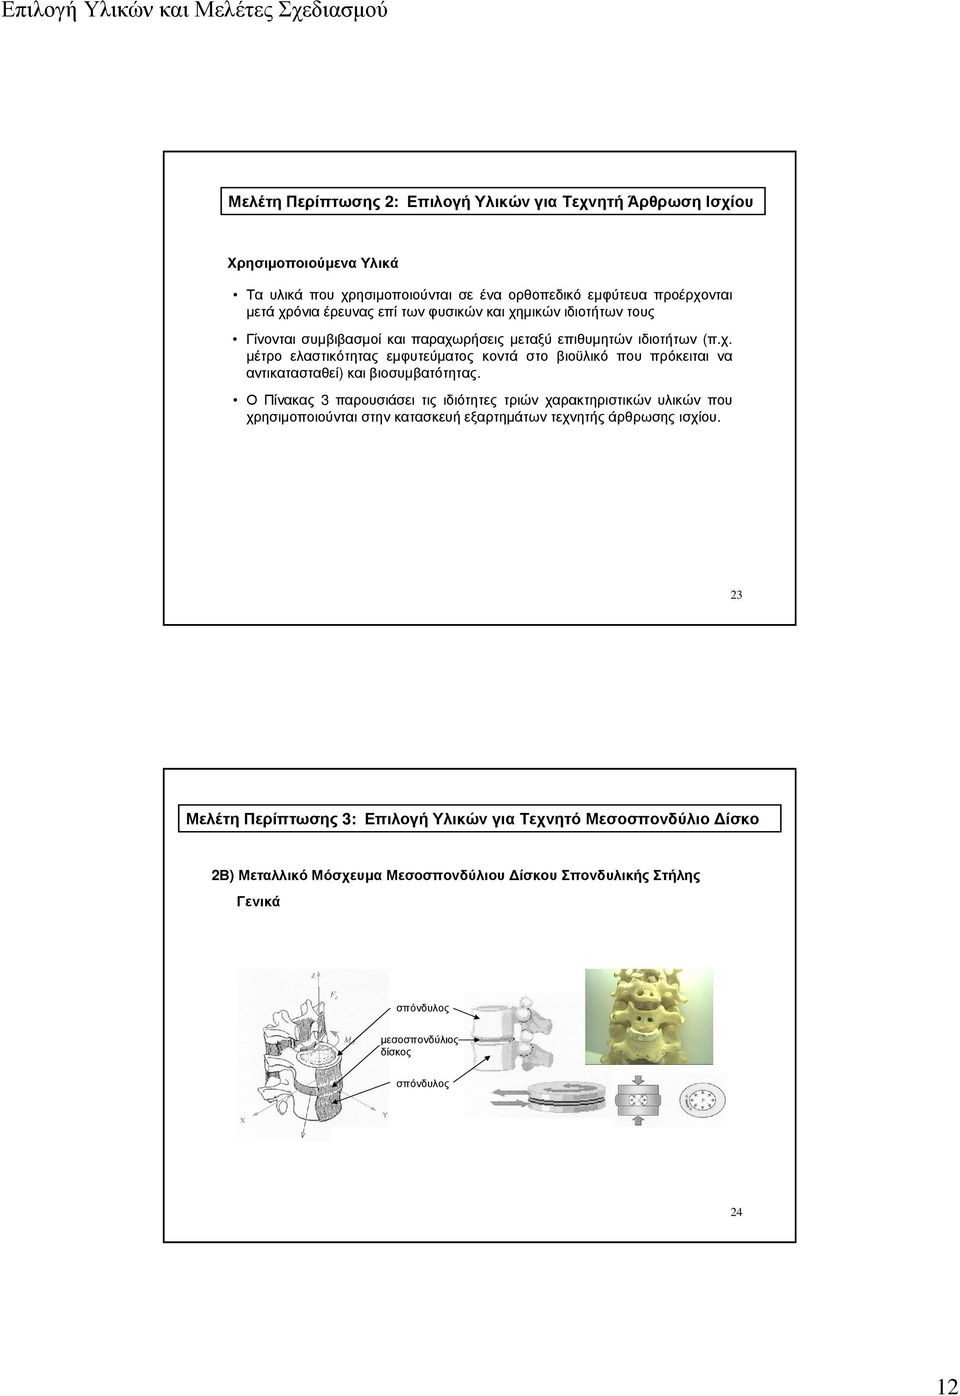 Ο Πίνακας 3 παρουσιάσει τις ιδιότητες τριών χαρακτηριστικών υλικών που χρησιµοποιούνται στην κατασκευή εξαρτηµάτων τεχνητής άρθρωσης ισχίου.